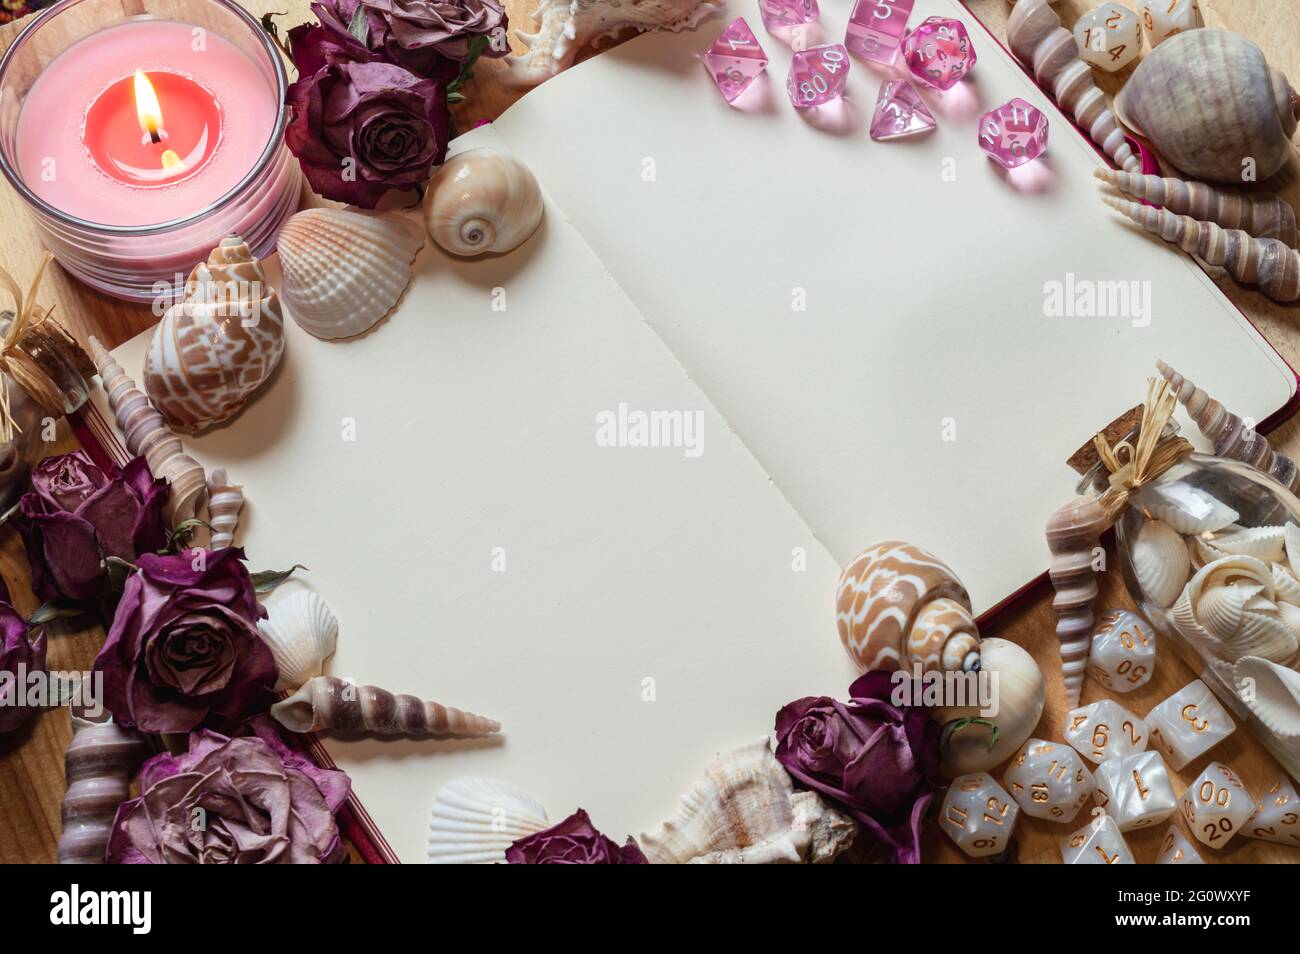 Immagine di un notebook aperto circondato da rose rosa secche, conchiglie, una candela rosa e dadi da gioco RPG bianchi Foto Stock